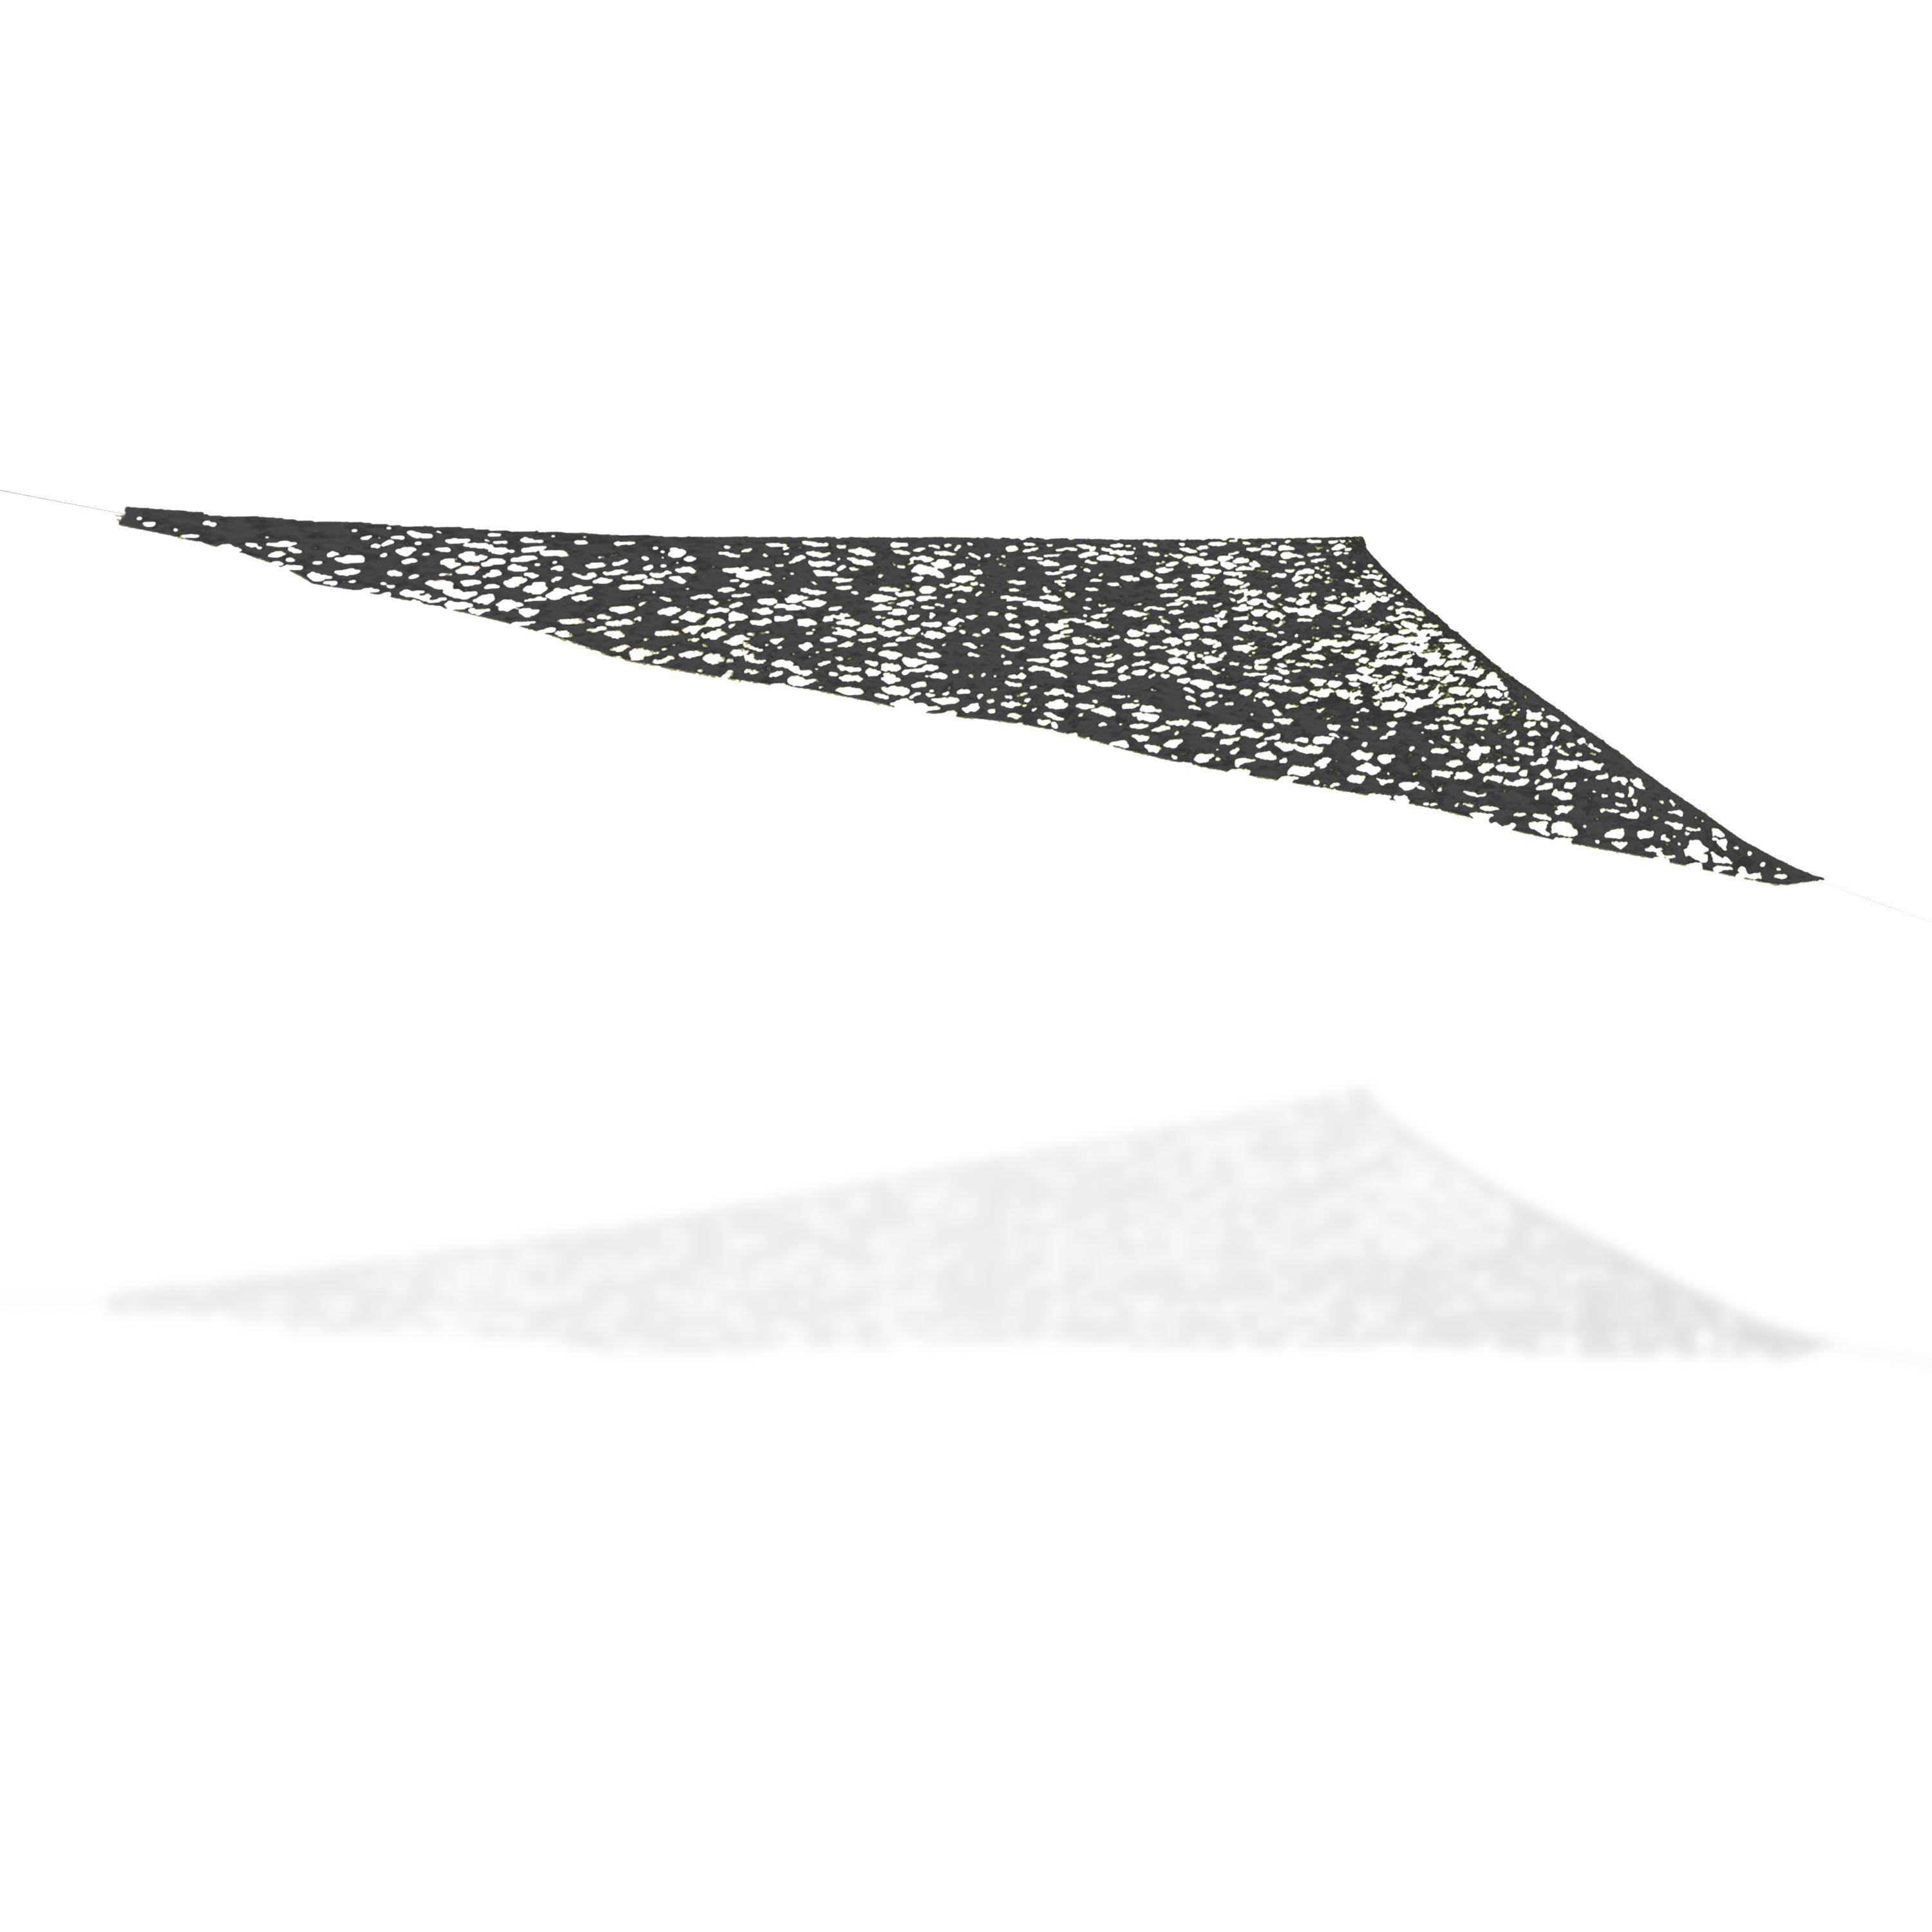 Voile d’ombrage en camouflage de 3.6 x 3.6 x 3.6 m, gris foncé Photo1